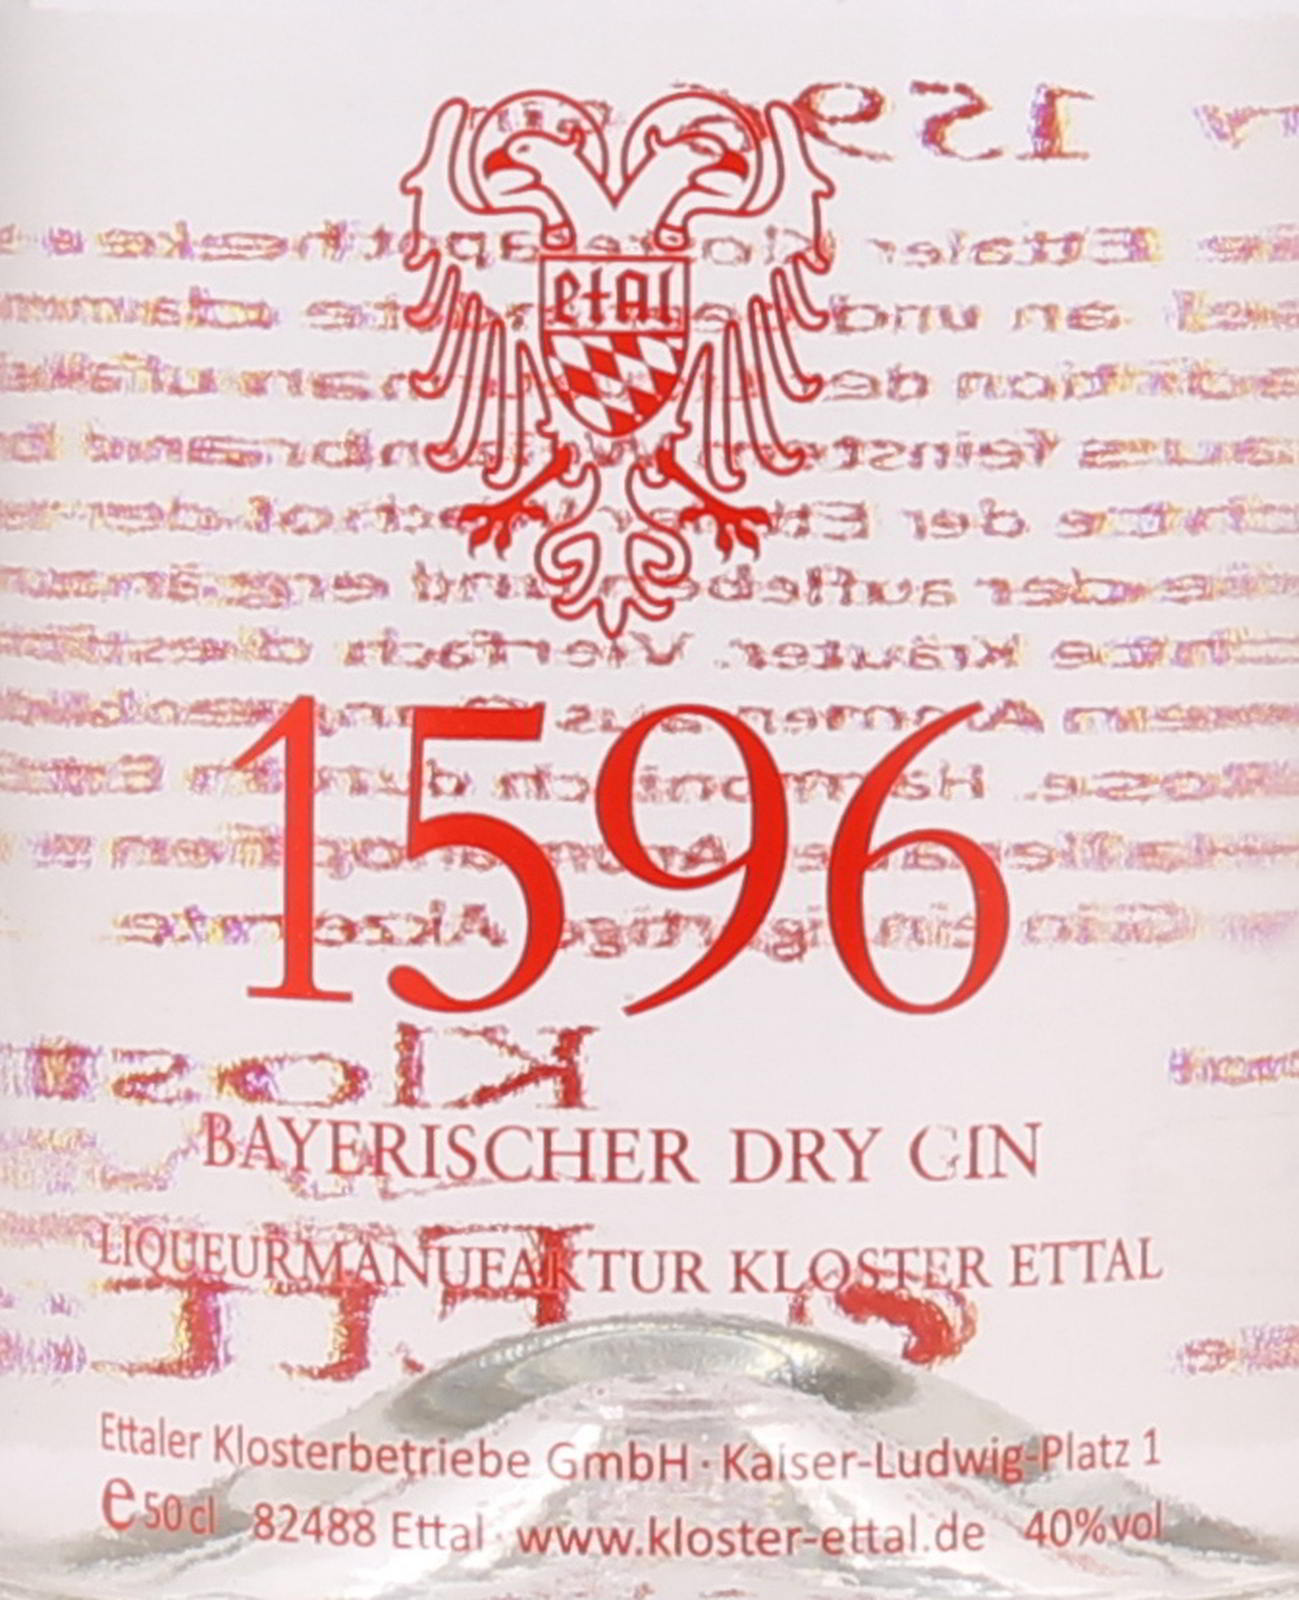 Bayerischer Ettaler Vol. 40 % ei 0,5 1596 Gin Dry Liter